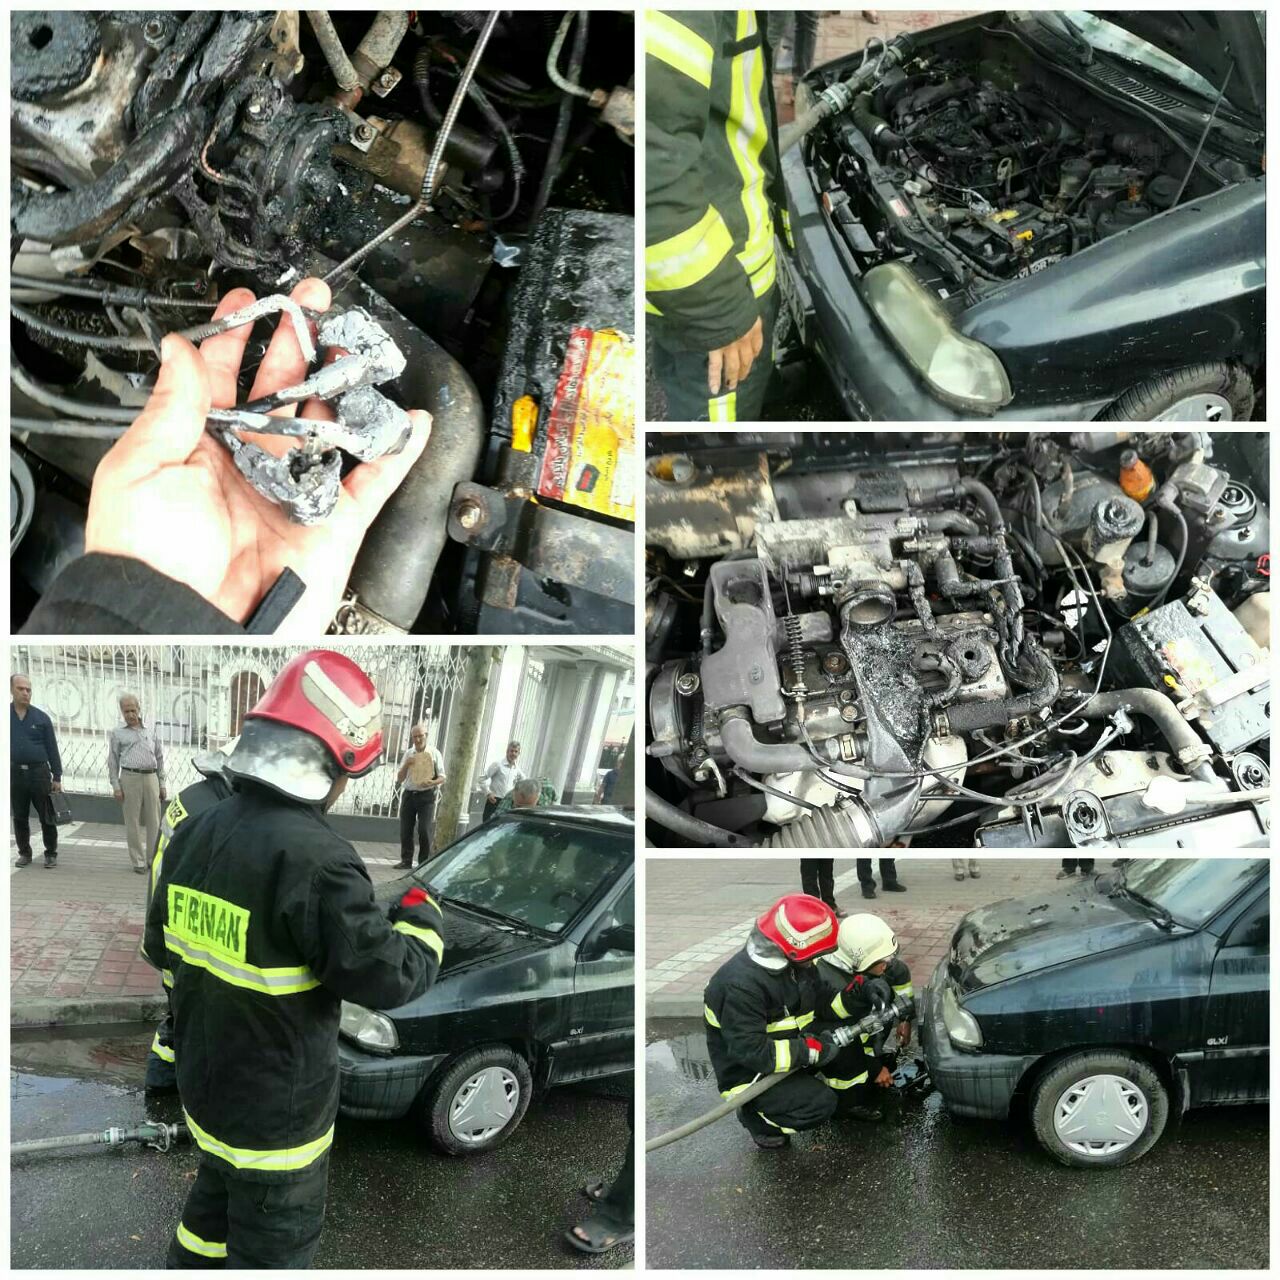 آتش سوزی خودرو در چهارراه گلسار رشت + عکس